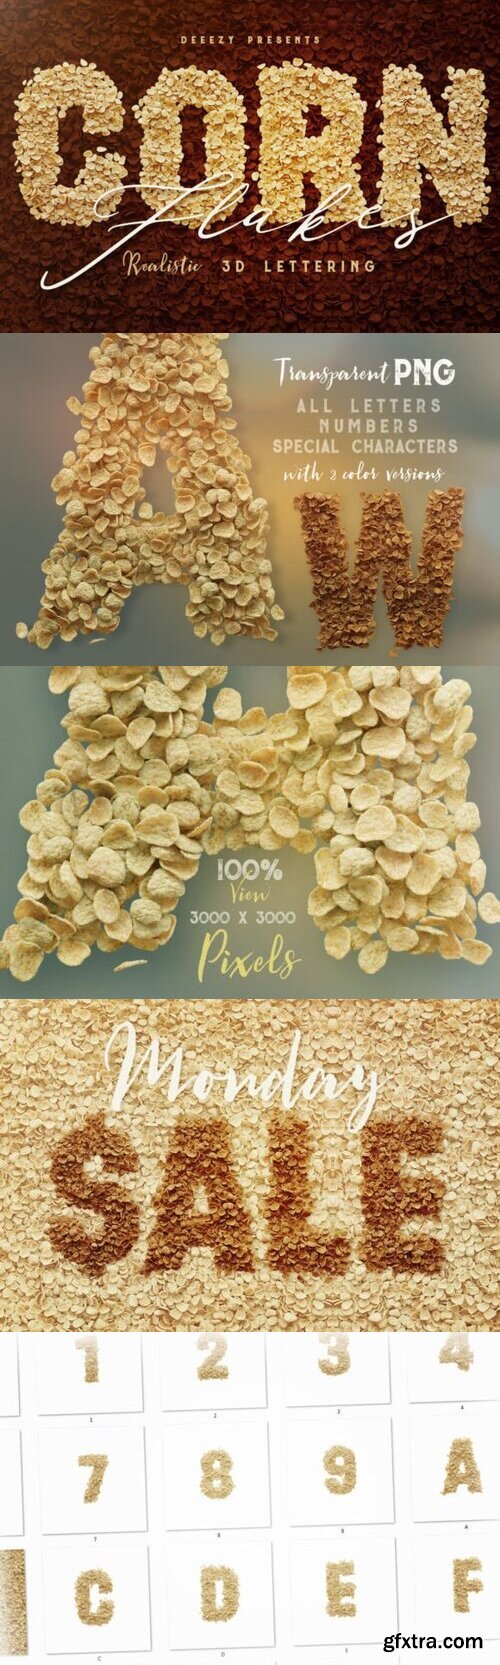 Corn Flakes 3D Lettering